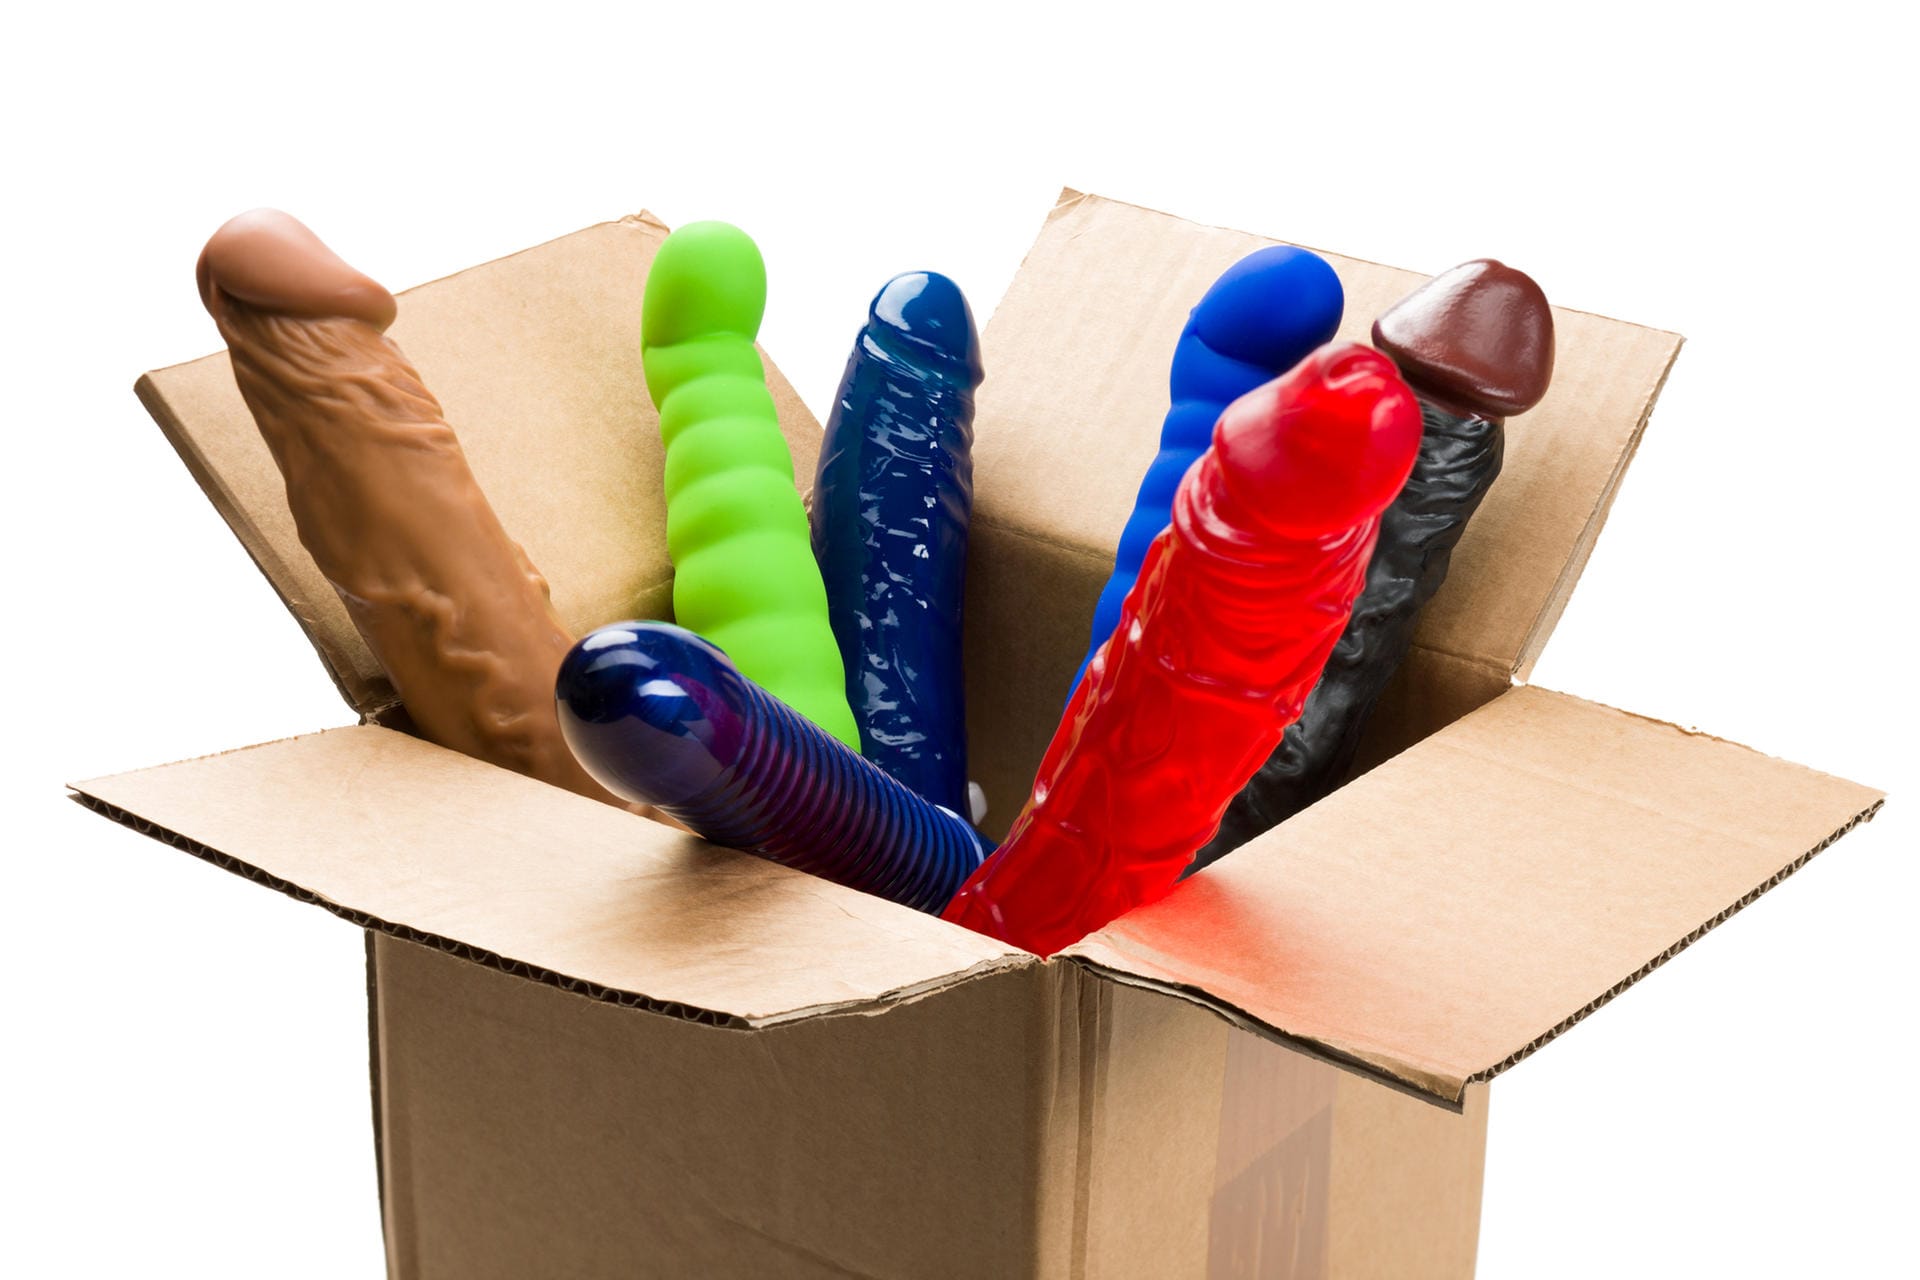 Eine Nutzerin auf Facebook schreibt, dass vor einem halben Jahr drei Pakete erhalten hat – jedes Mal gefüllt mit Sexspielzeug. Auf ihre Anfrage, was dahinterstecken könnte, hatte Amazon keine Antwort. Die Nutzerin habe die Sachen als Reaktion zurückgeschickt. (Symbolbild)